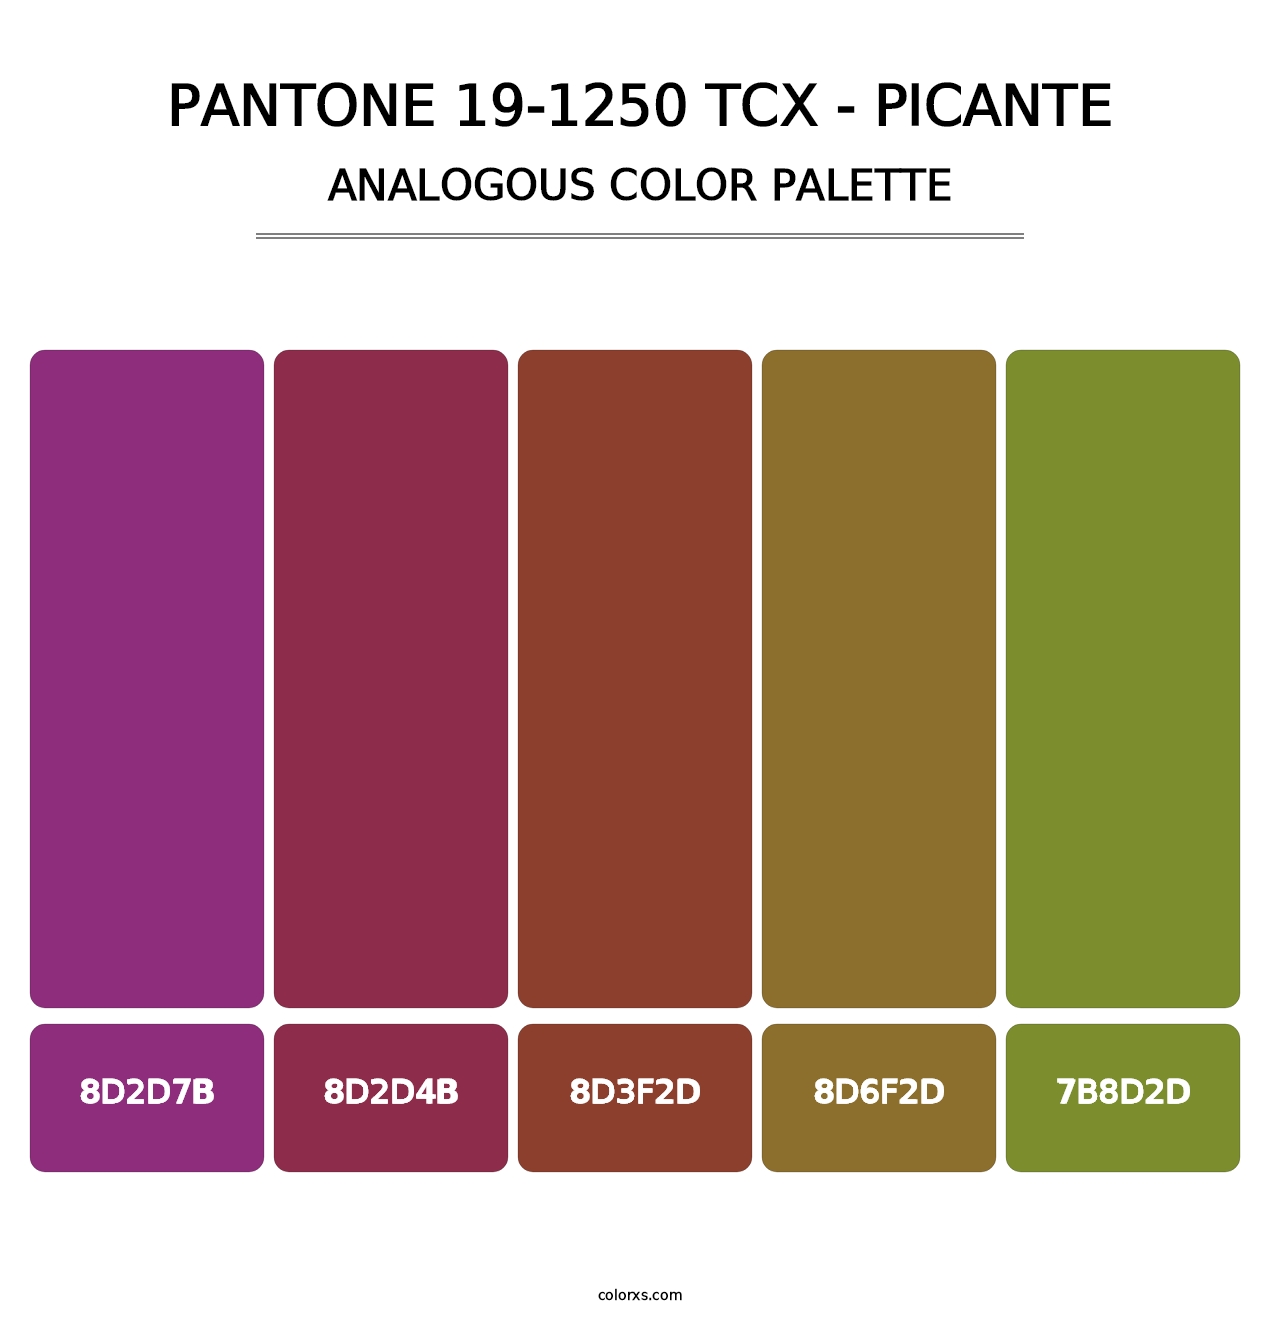 PANTONE 19-1250 TCX - Picante - Analogous Color Palette